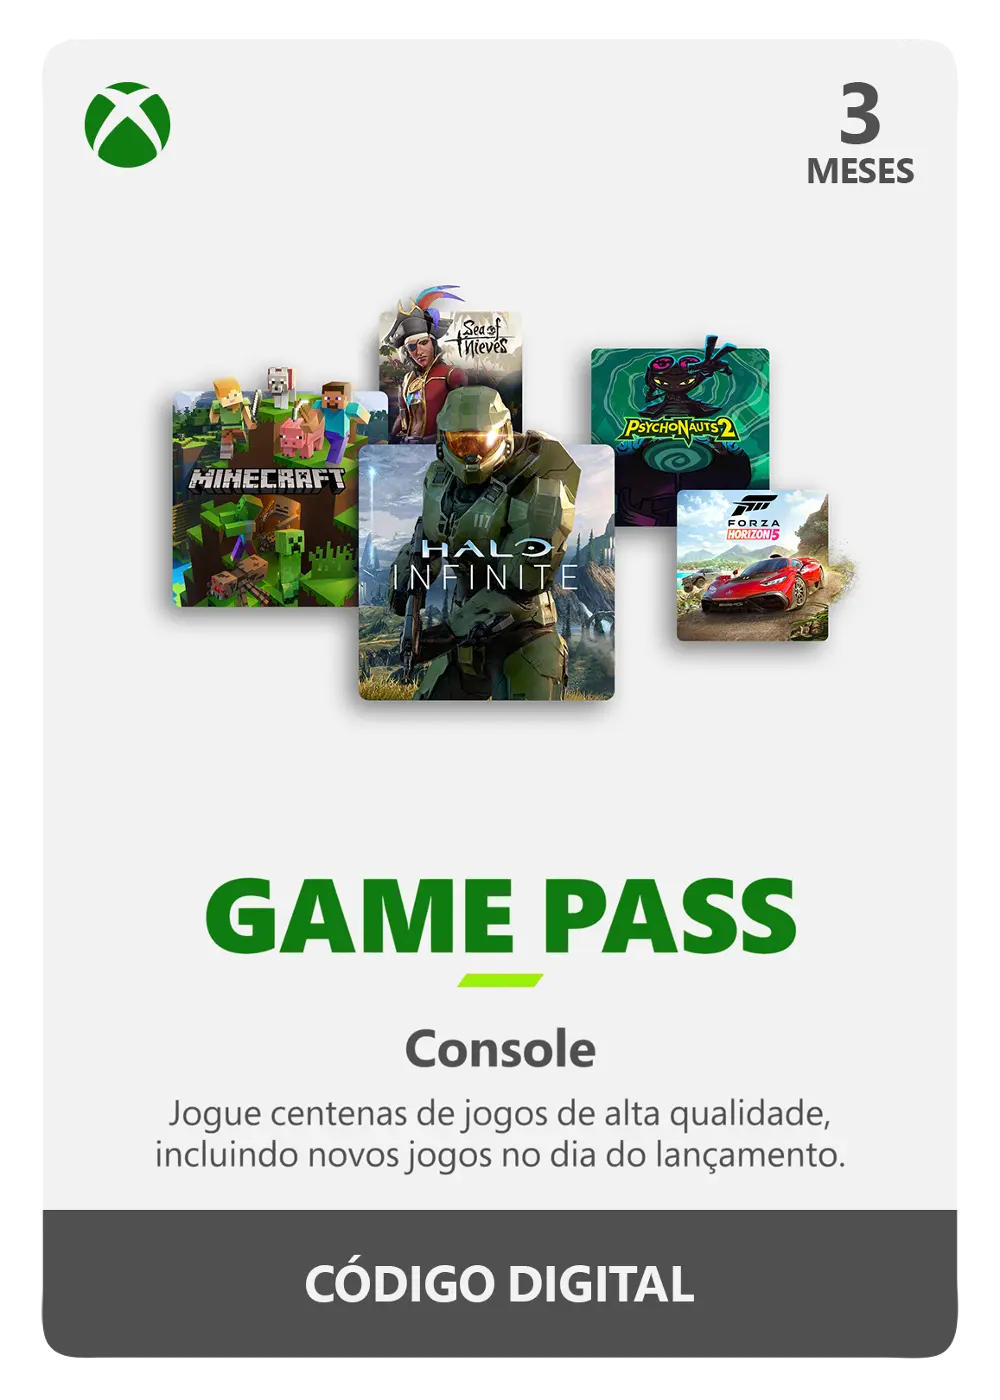 Assinatura Game pass ultimate 1 mês (25 dígitos) - Videogames - Vale  Encantado, Vila Velha 1259581804